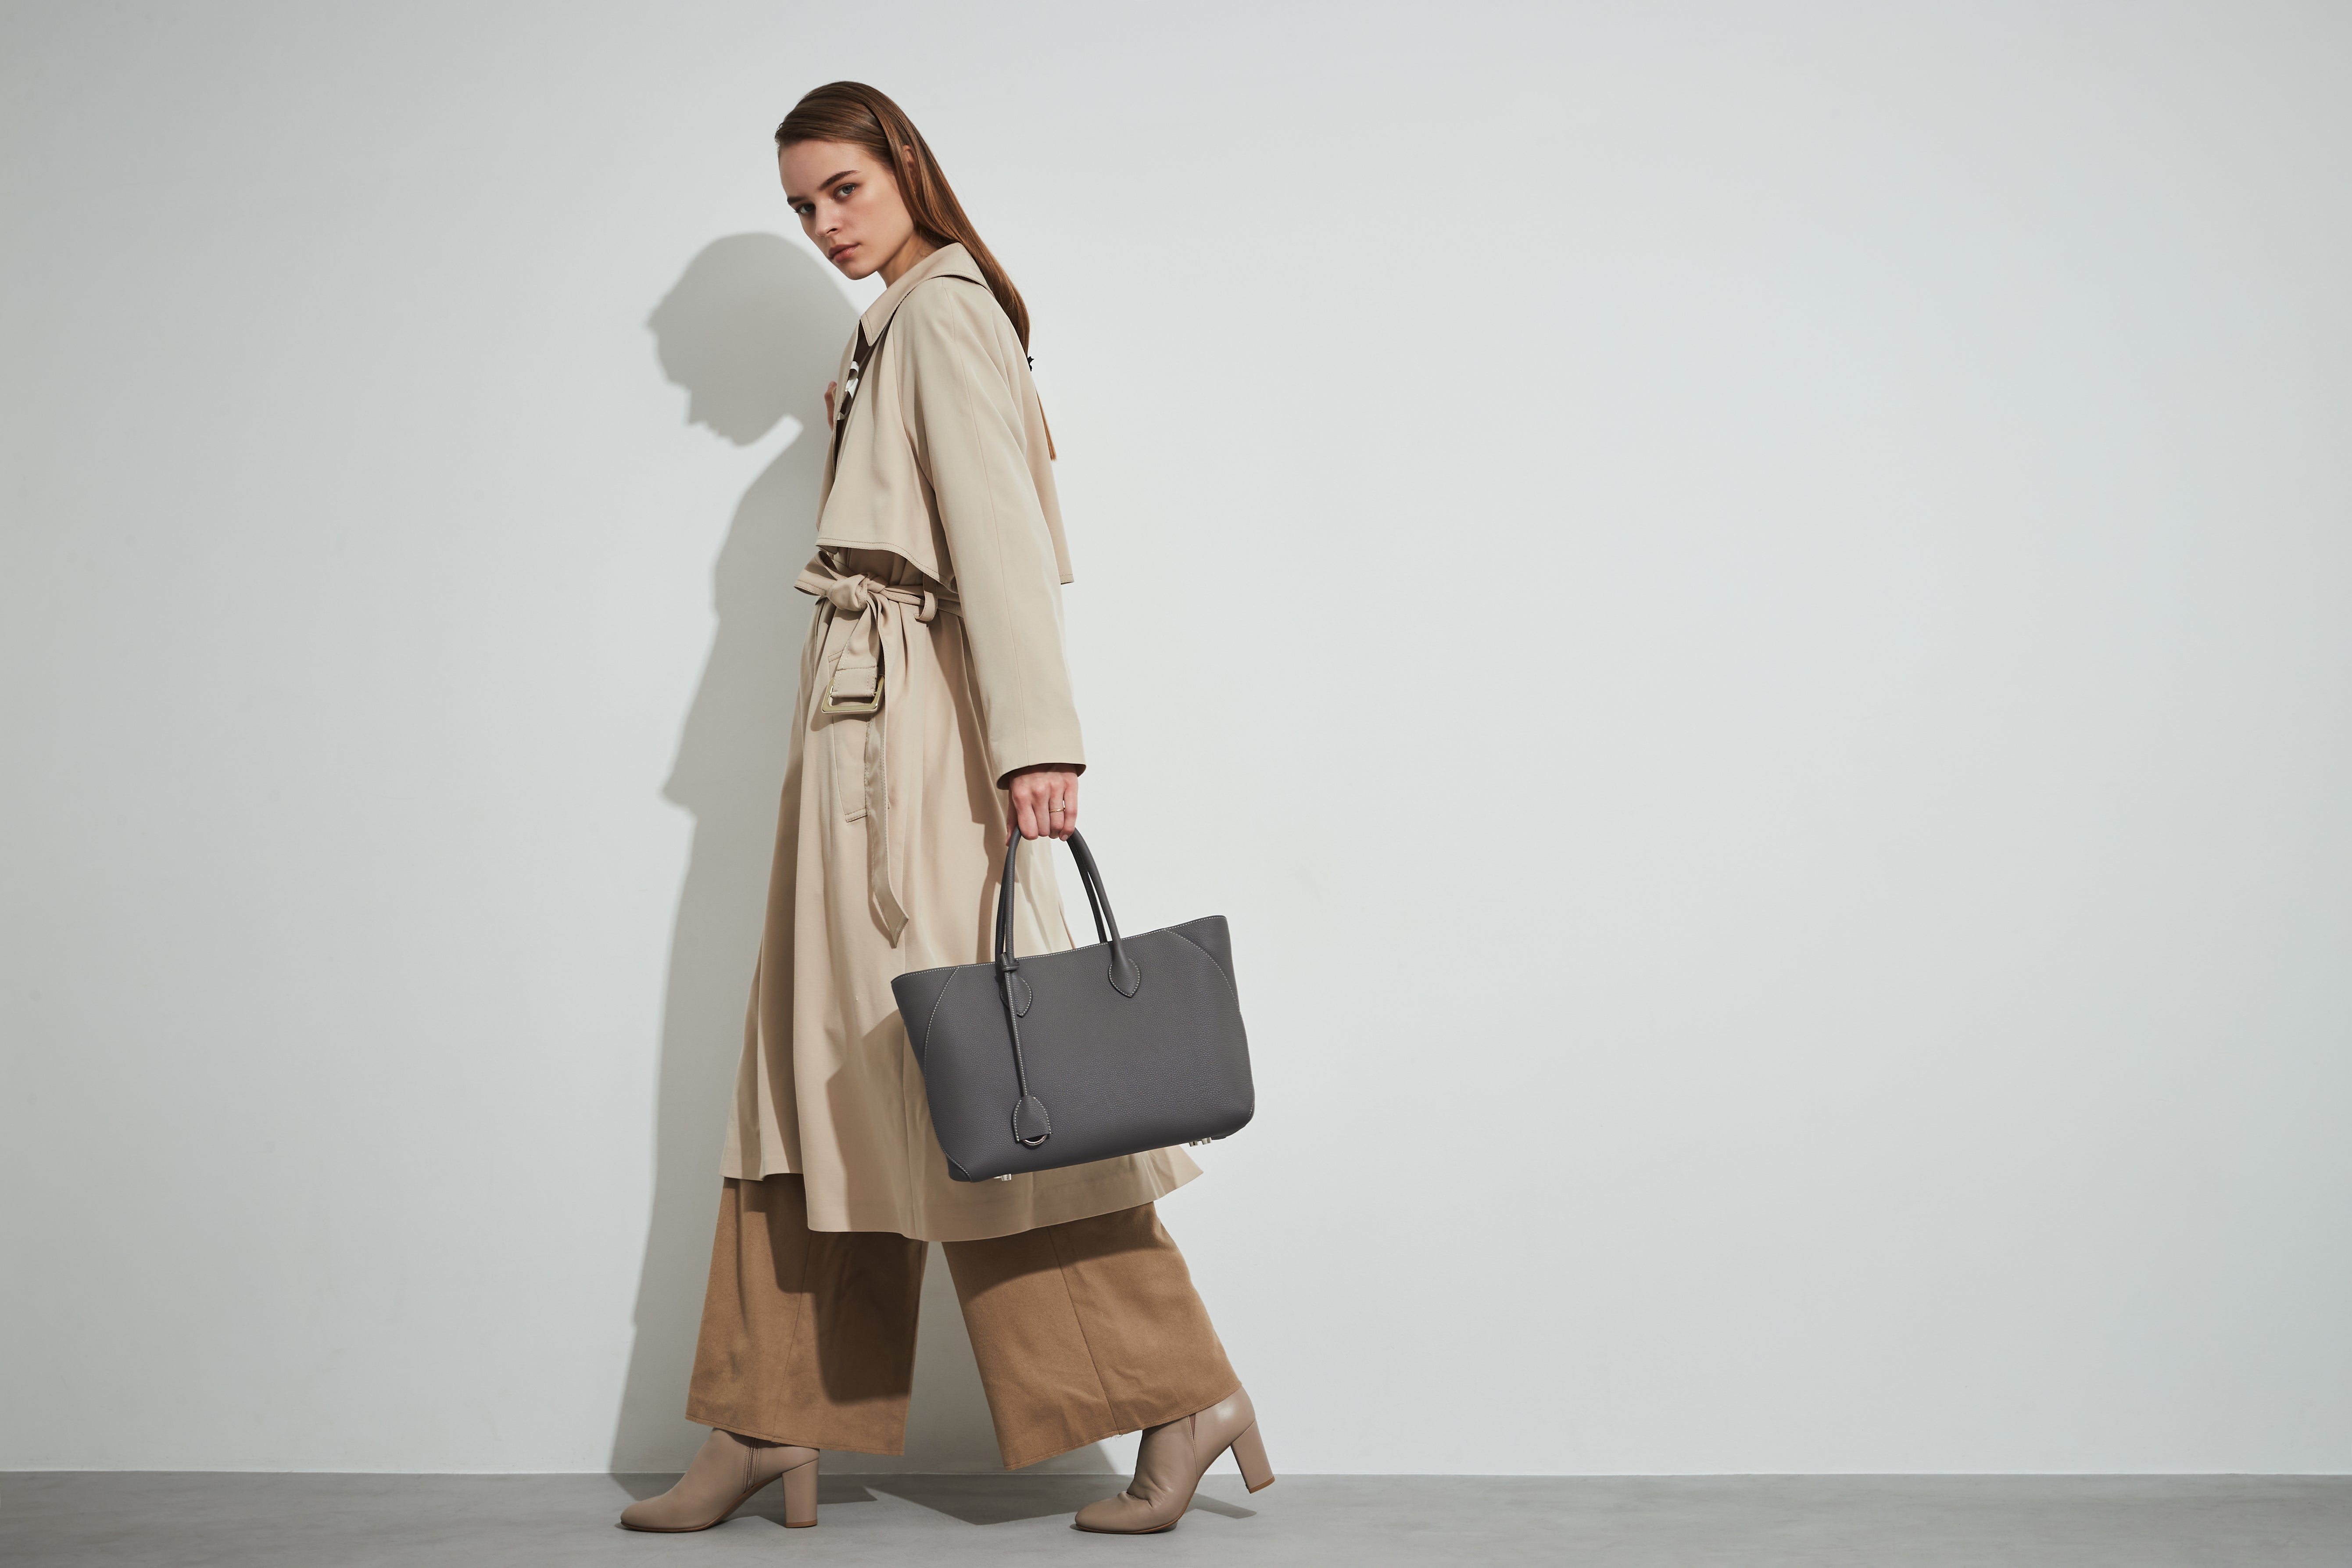 Femeie elegantă într-un trench coat, purtând o geantă Mia Tote Bag Medium de la BONAVENTURA, suficient de spațioasă pentru un Macbook, ideală pentru utilizarea zilnică.